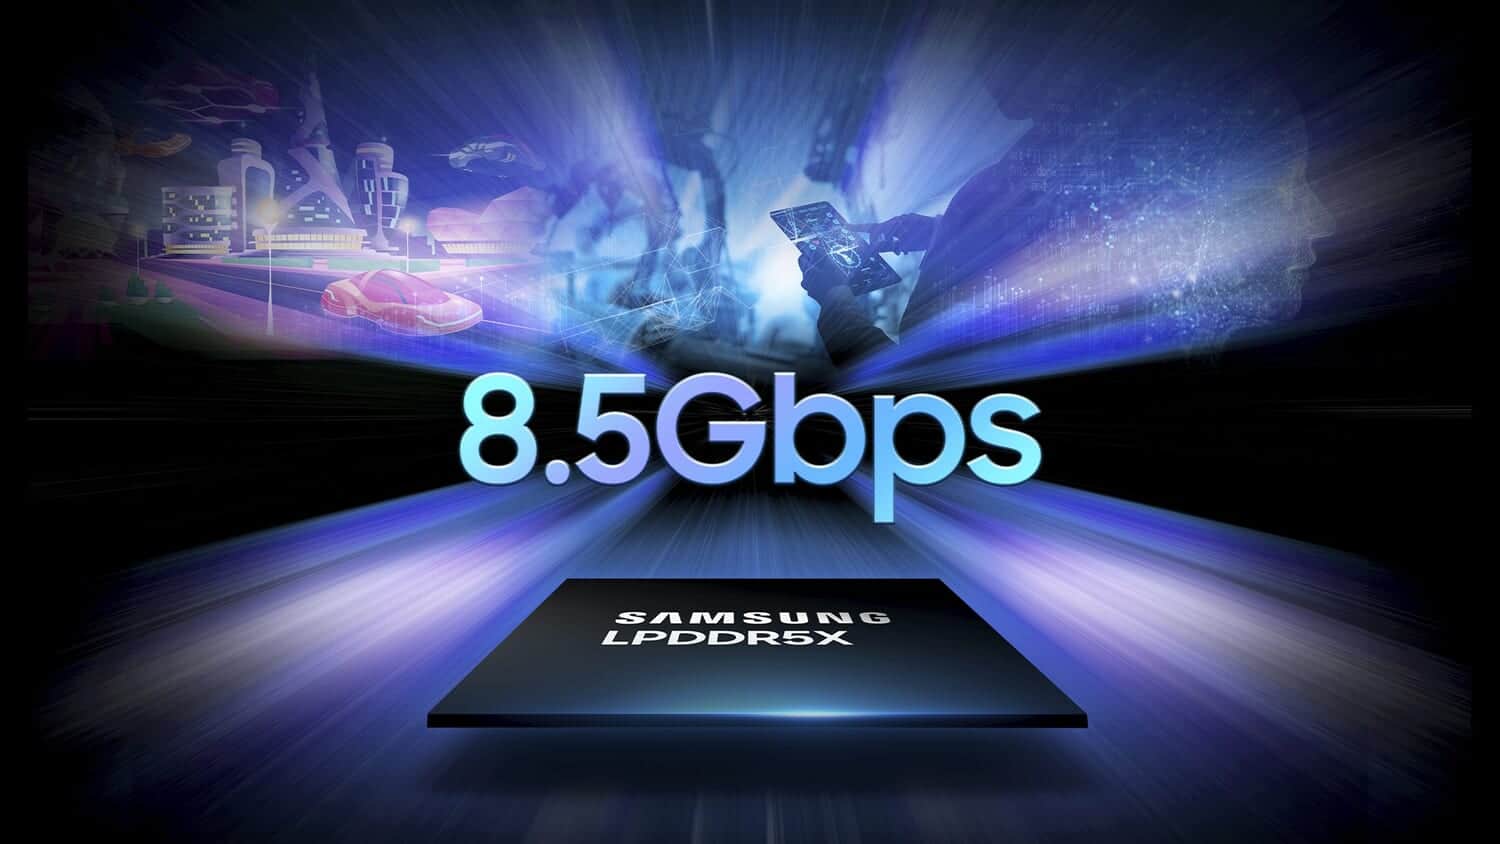 サムスン、業界最速8.5GbpsのLPDDR5X DRAMを発表